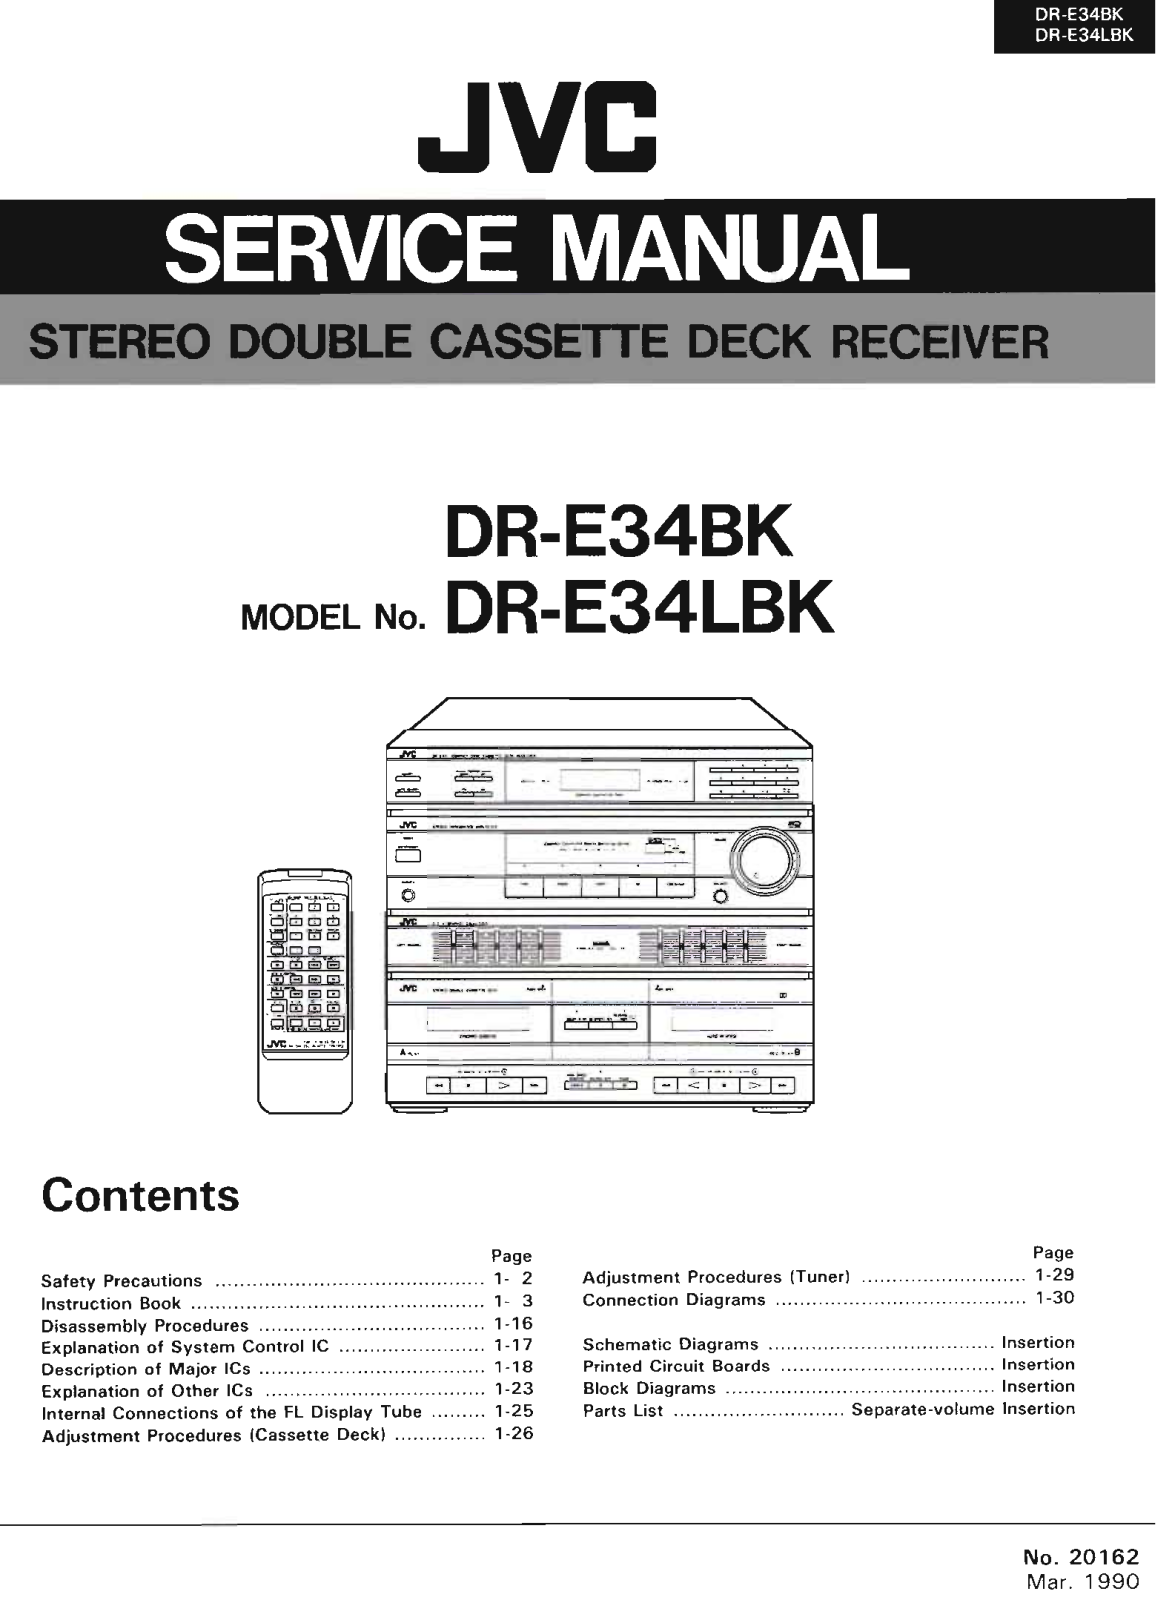 Jvc DR-E34-LBK, DR-E34-BK Service Manual